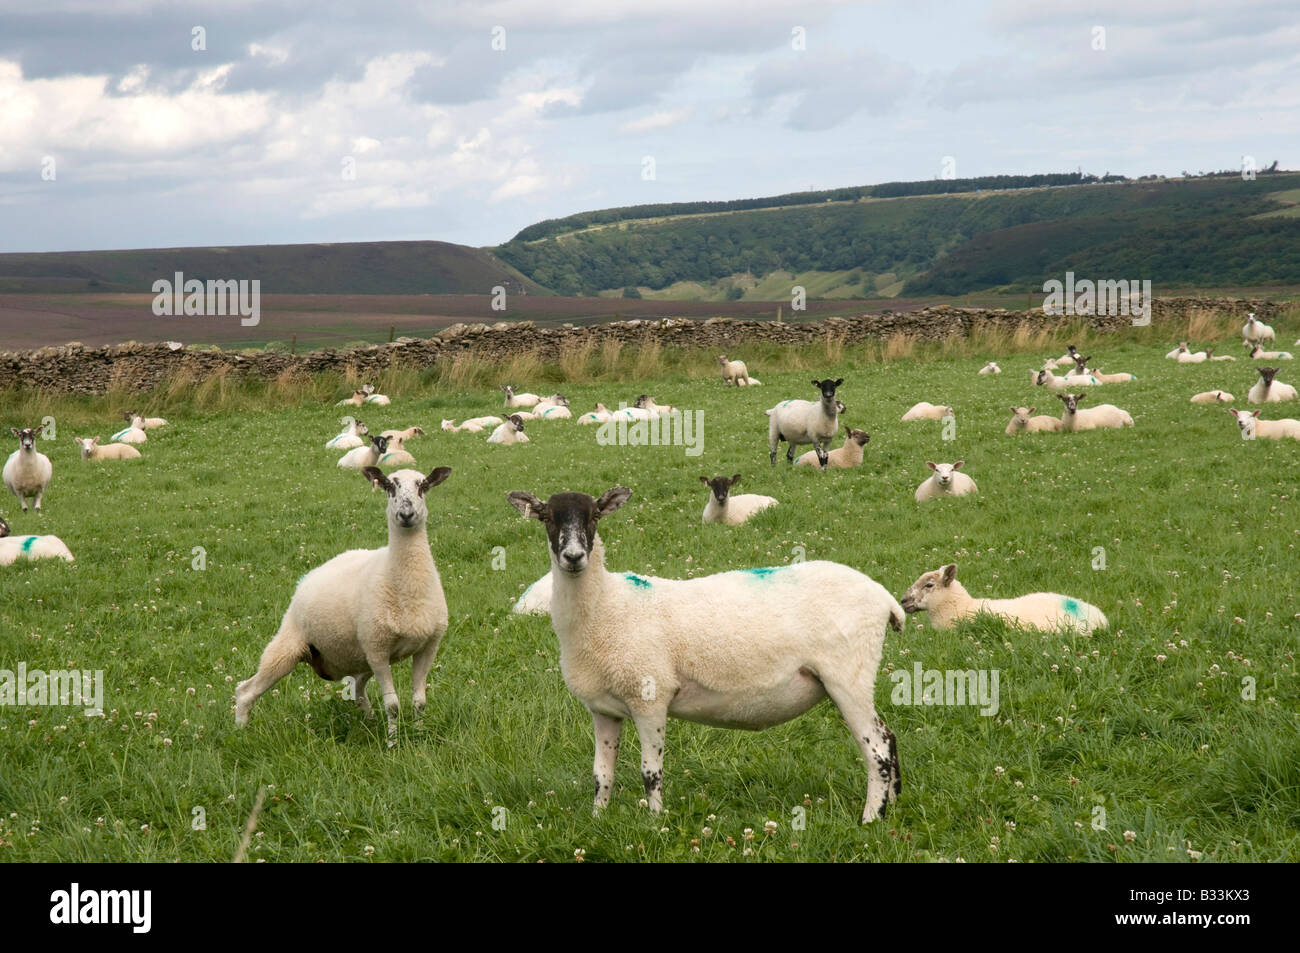 Sheep staring at camera, Levisham, North Yorks Moors National Park, Northern England Stock Photo